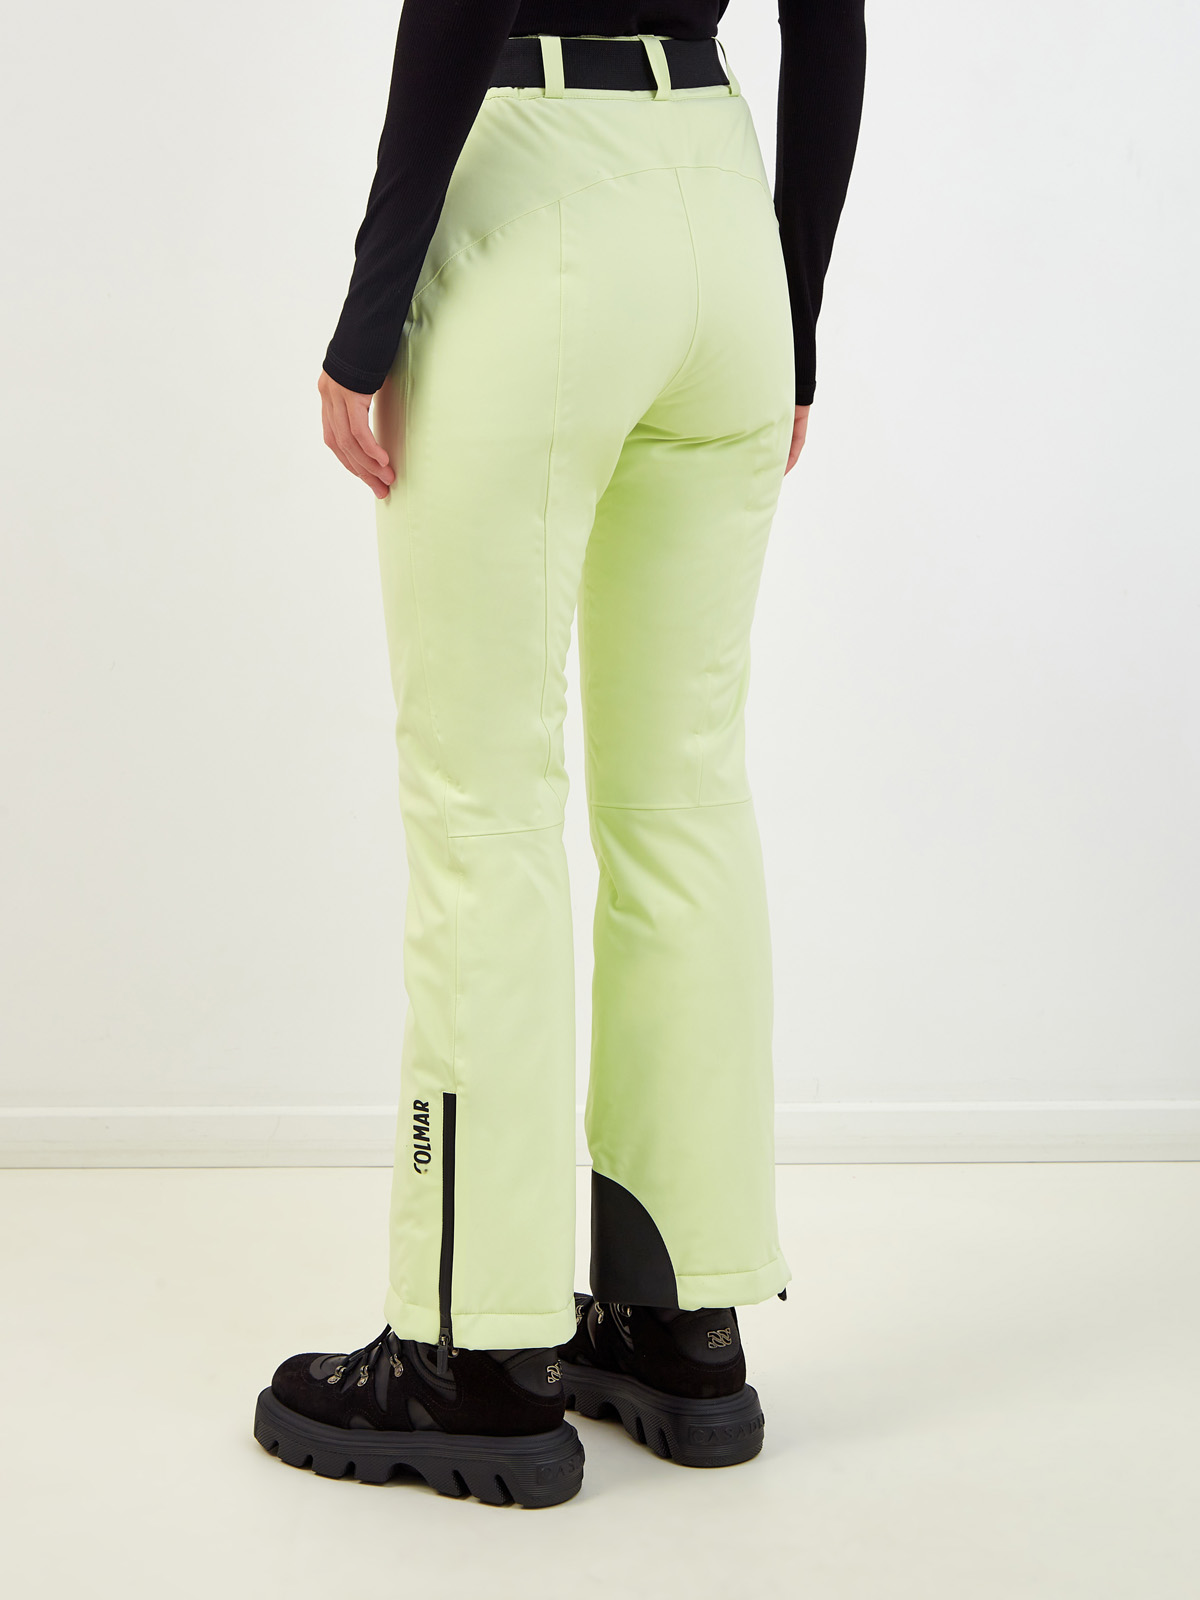 Горнолыжные брюки с утеплителем Clomax® Flex4way и поясом COLMAR, цвет зеленый, размер S;M;L;XL - фото 4